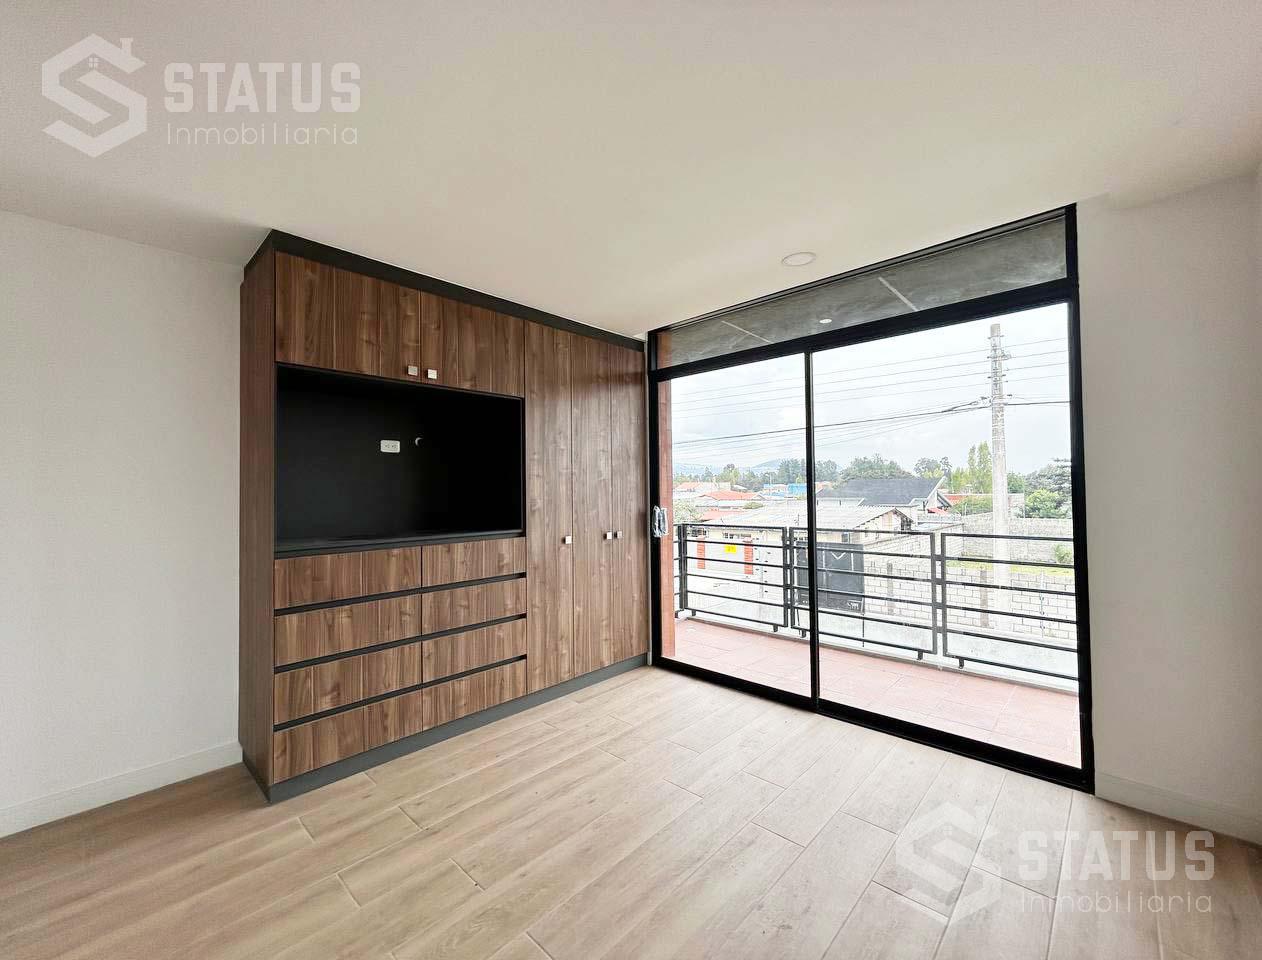 Se vende casa en conjunto 130 m, 3 Dorm., 2 Garajes, sector El Dean – Los Chillos, desde $116.000